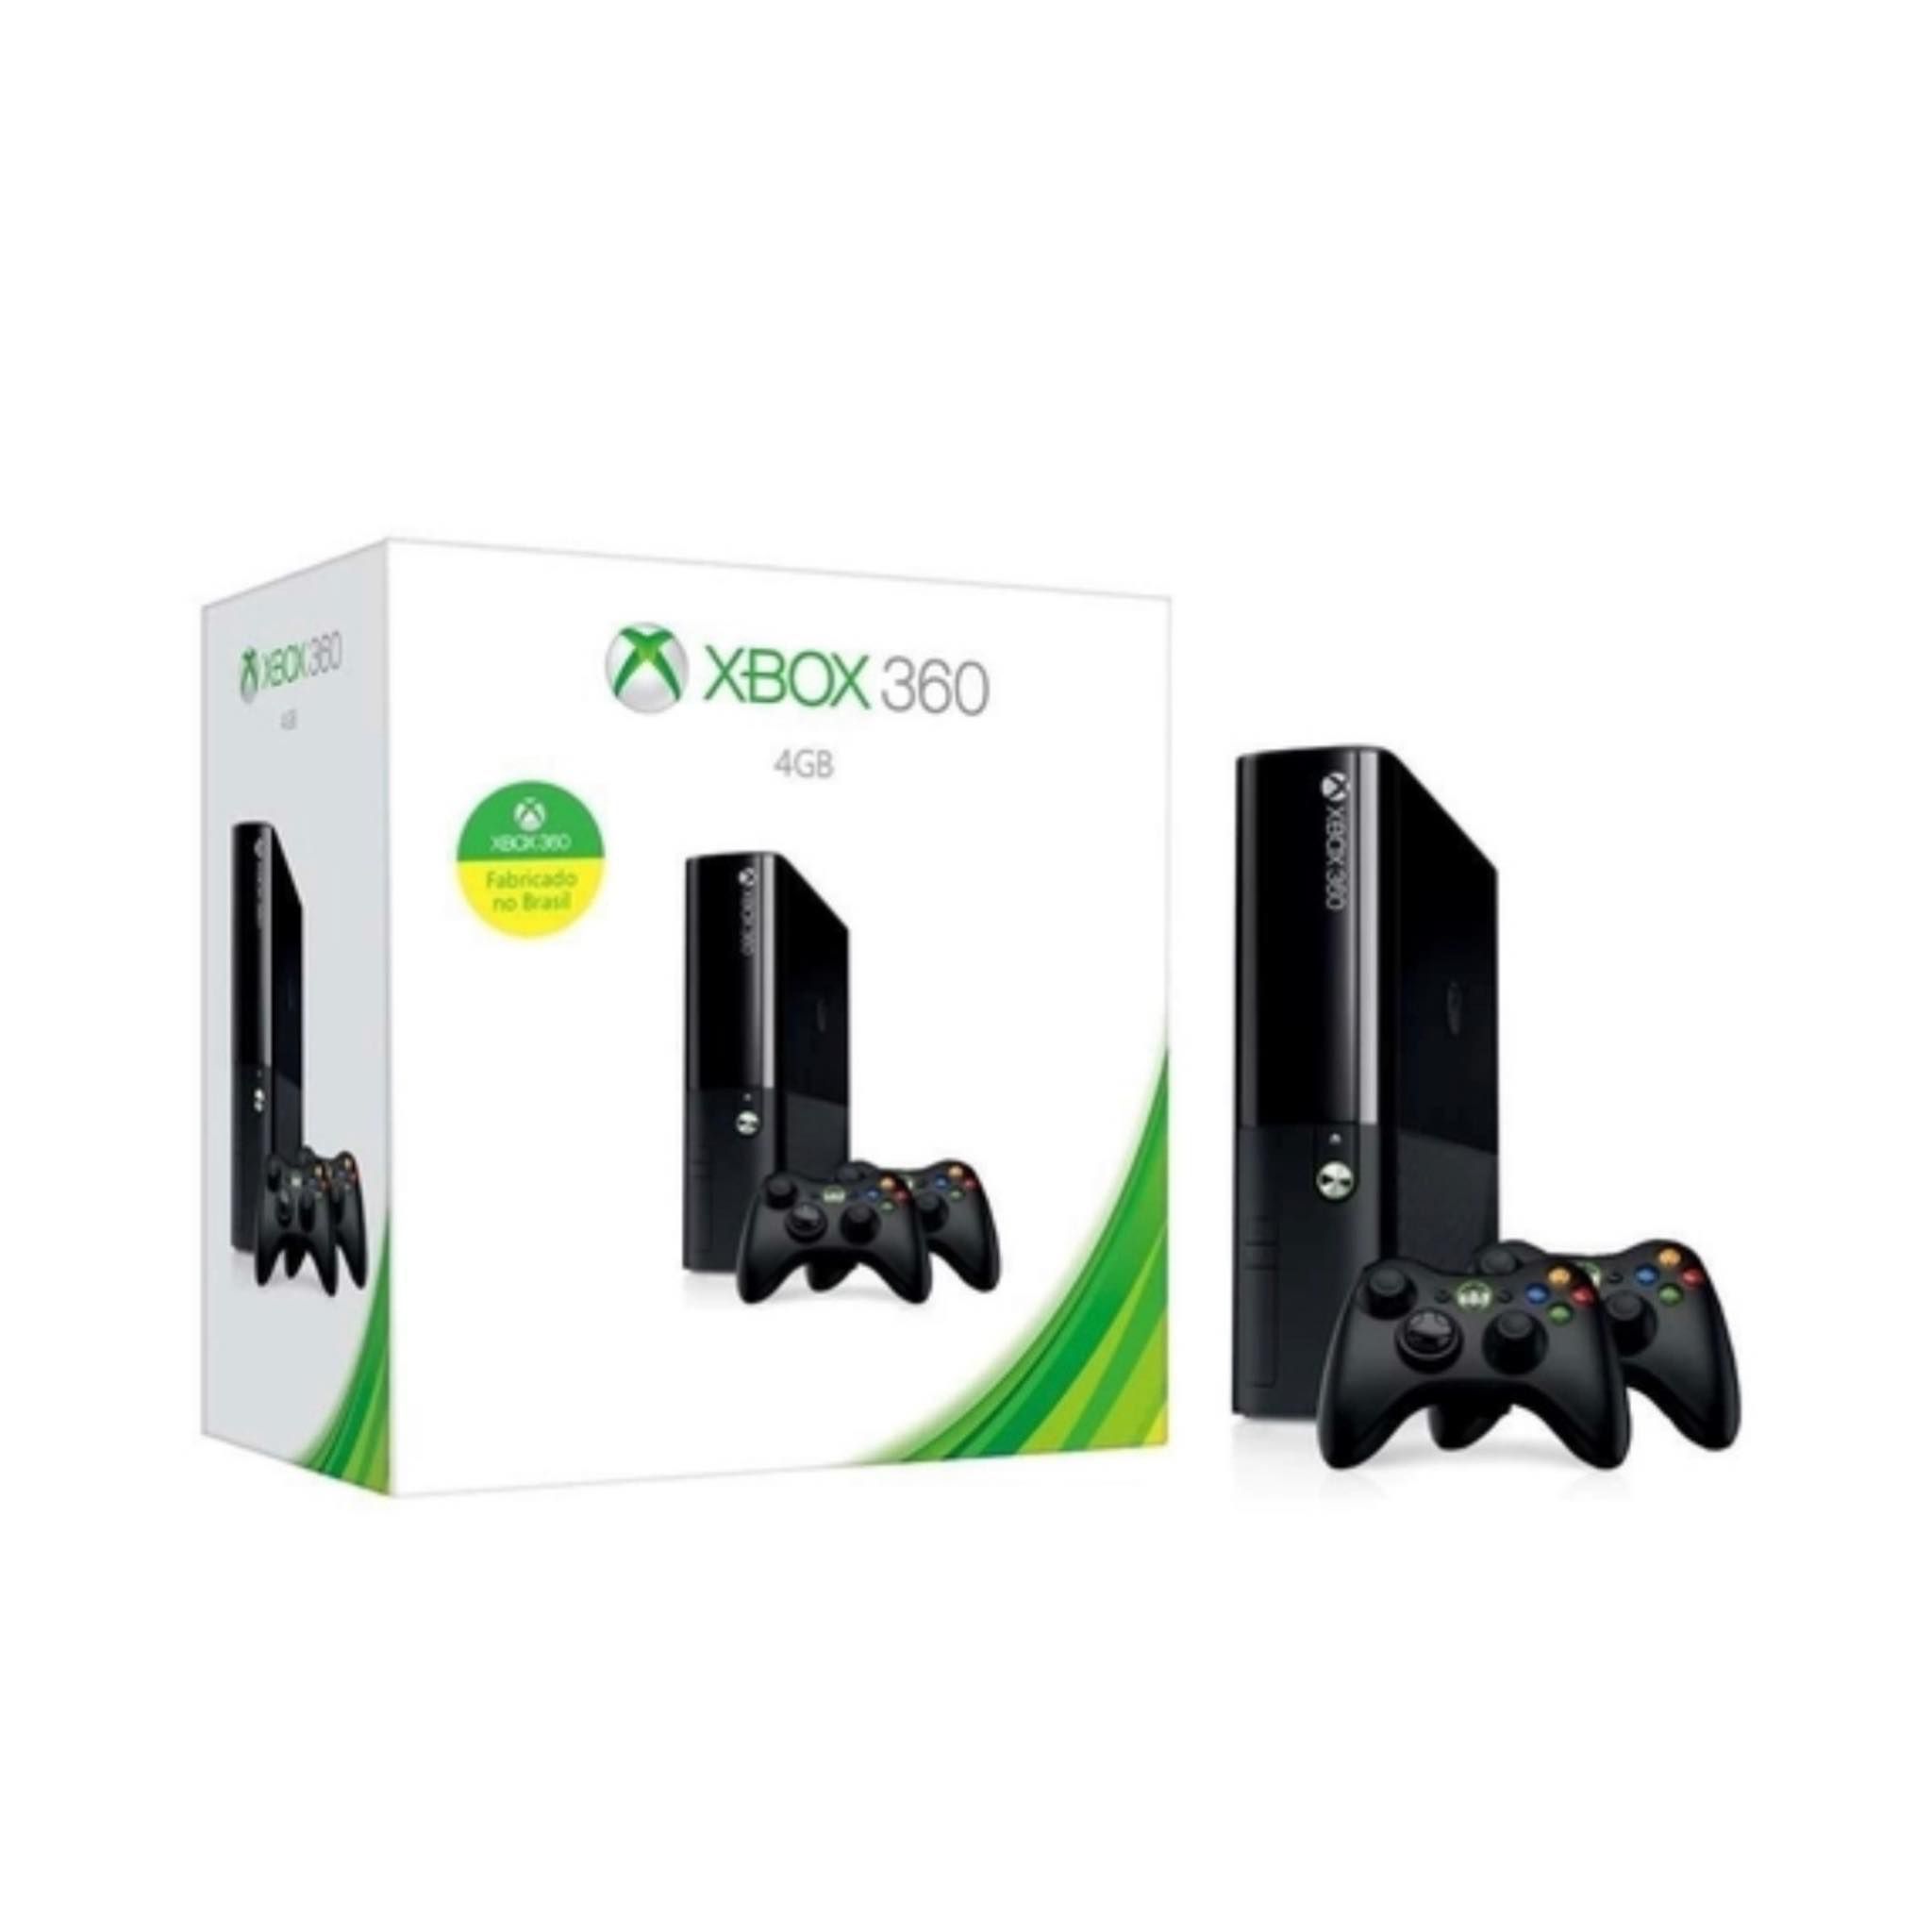 Xbox 360 Super Slim + 2 controles - Loja Cyber Z